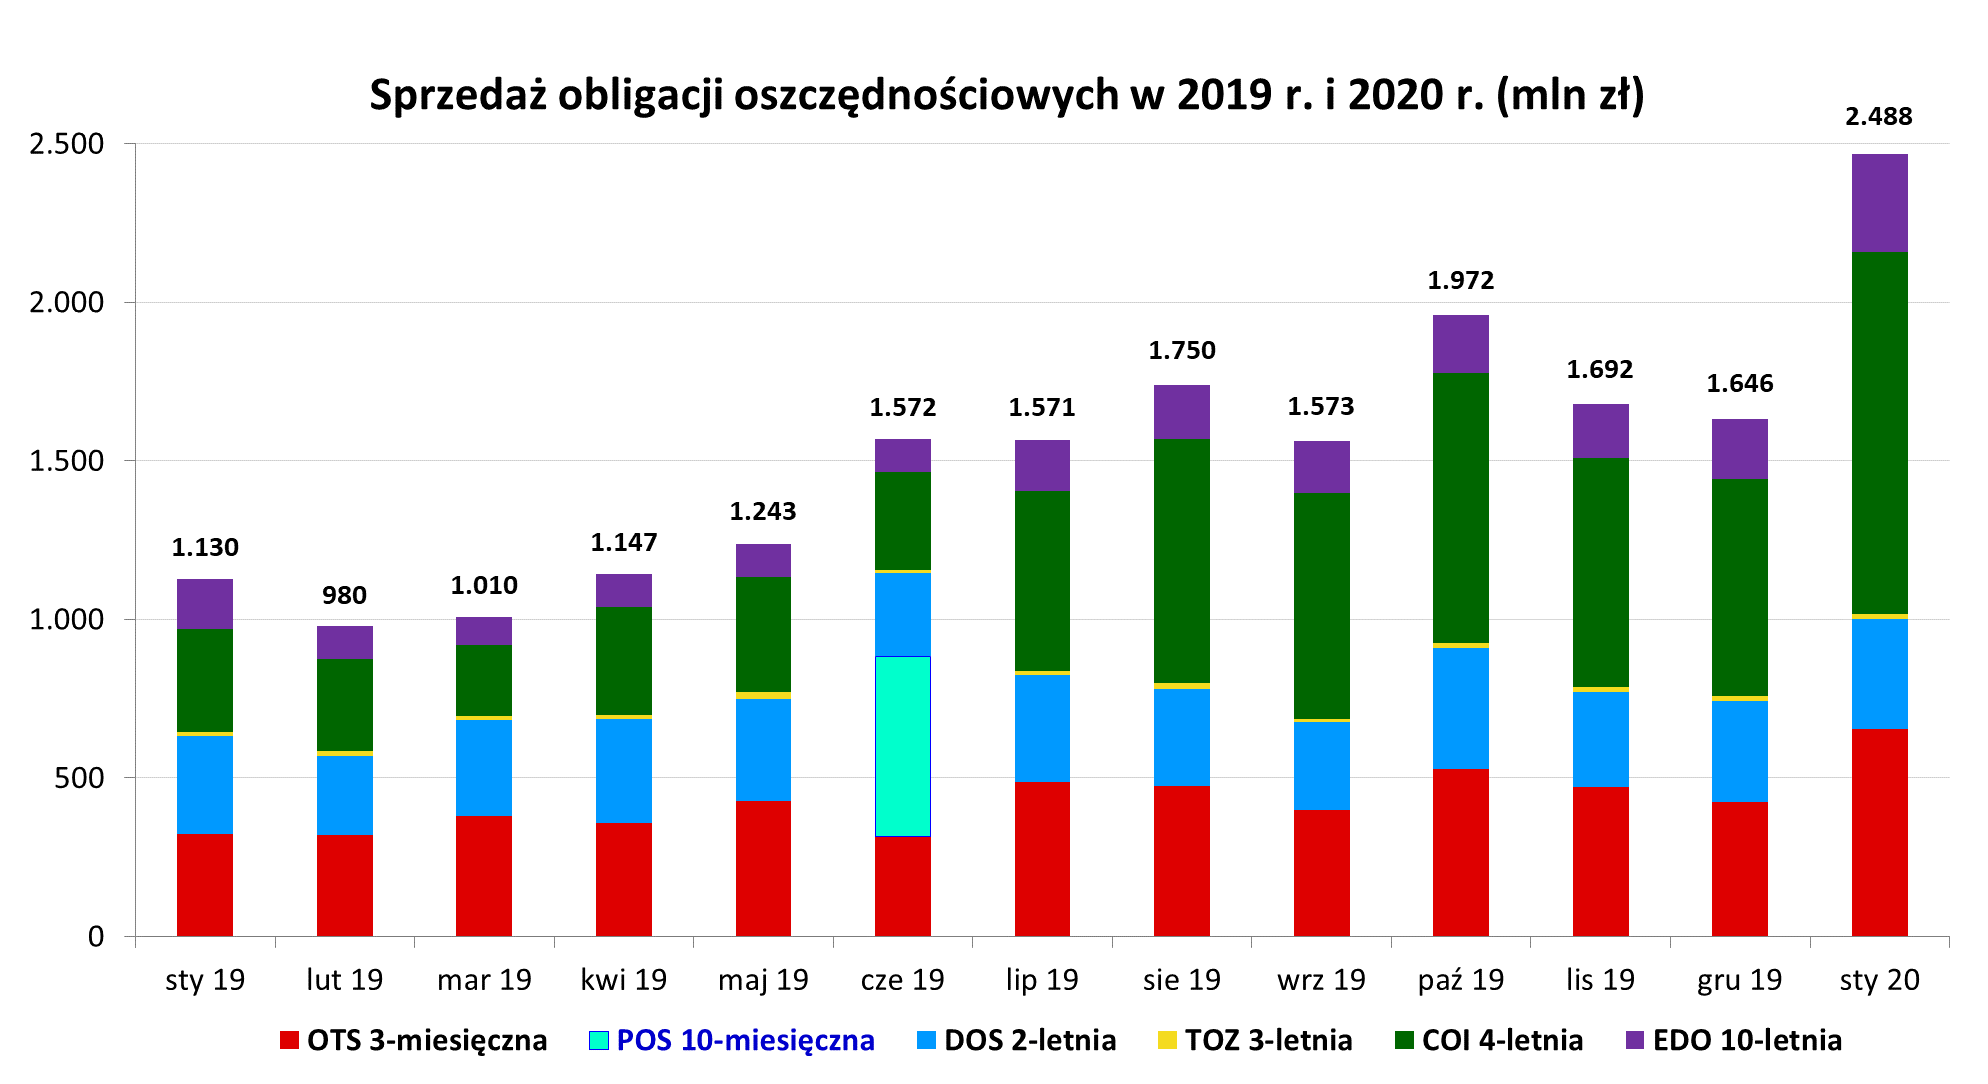 Wyniki sprzedaży oszczędnościowych obligacji skarbowych w 2019 r. i 2020 r. w mln zł